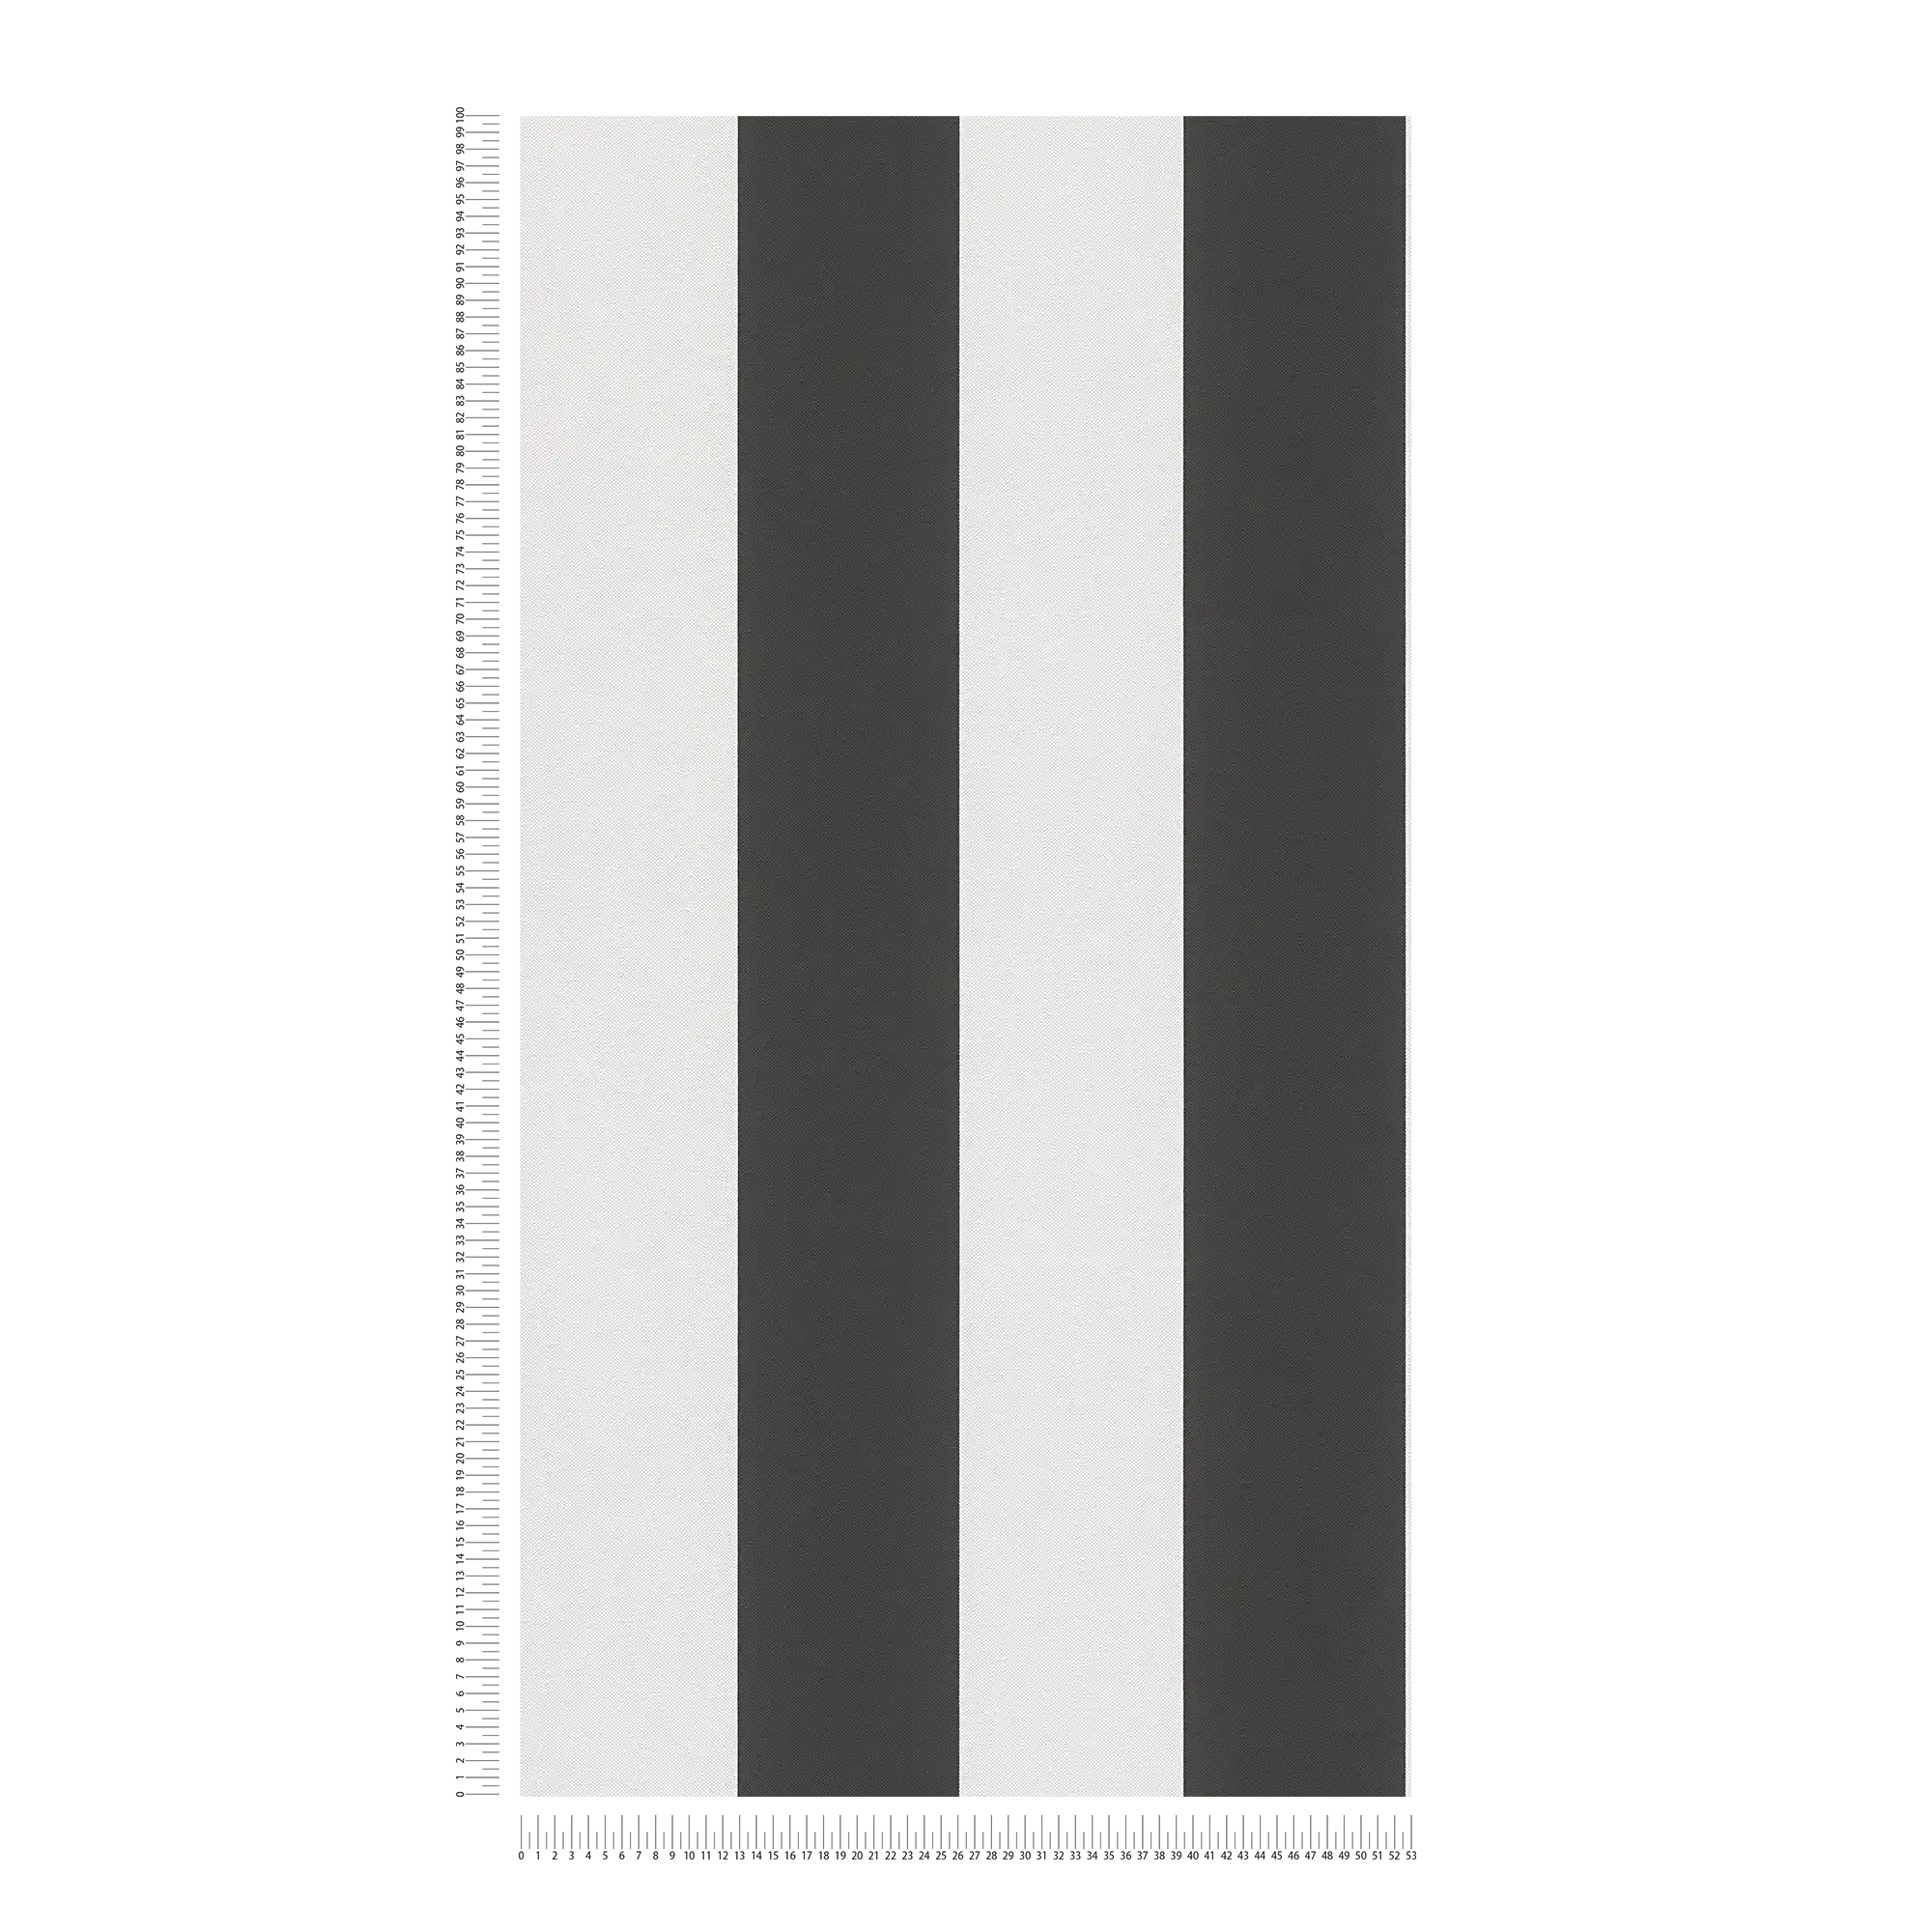             Striped wallpaper black and white design
        